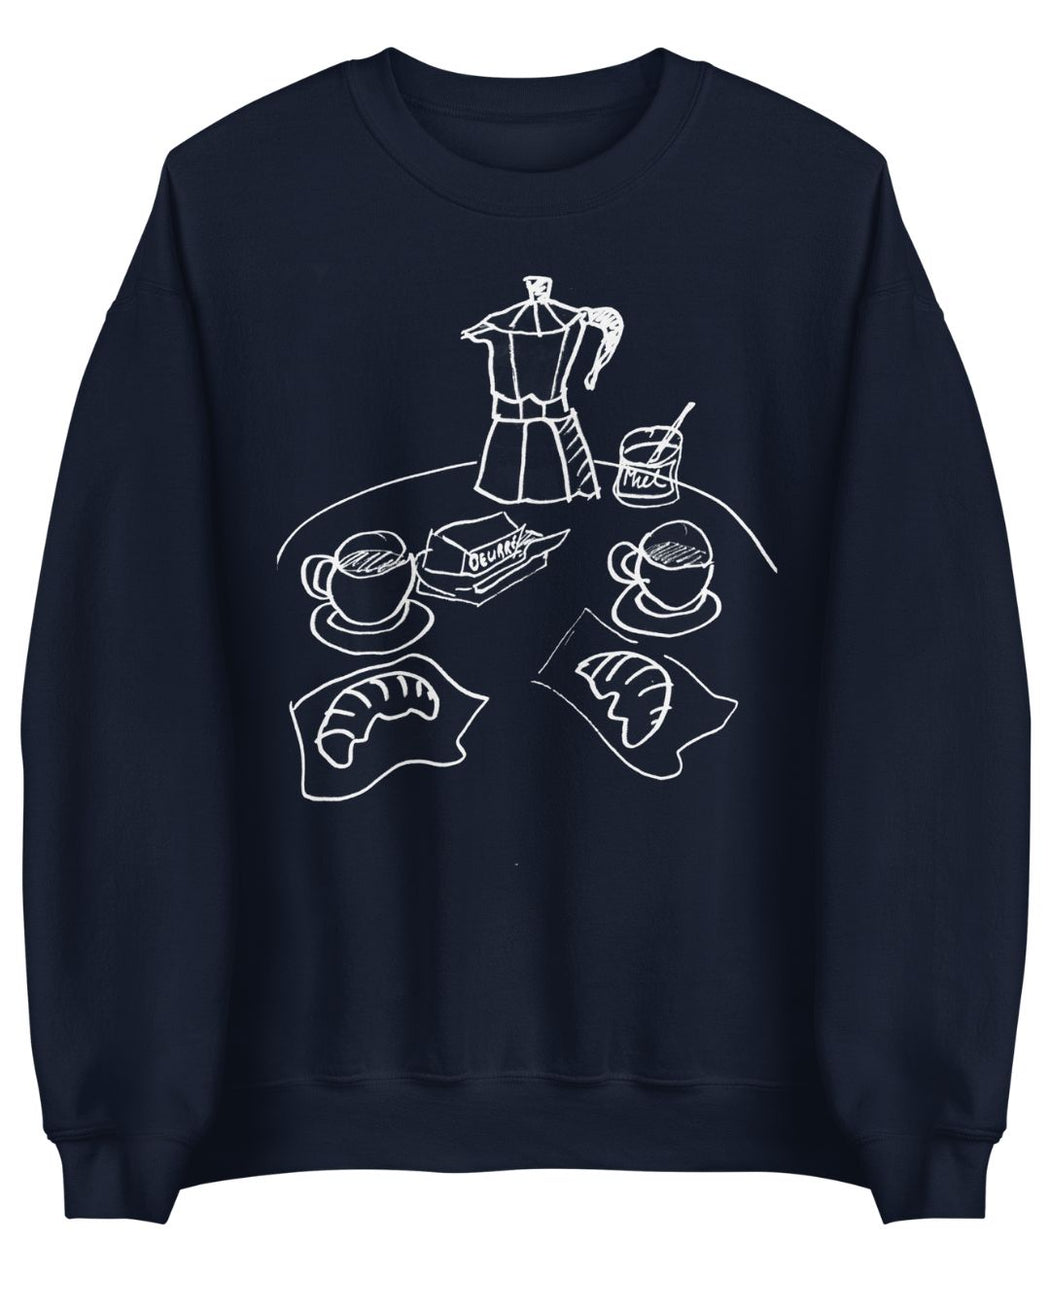 À Table! Sweatshirt- royal/ black / navy